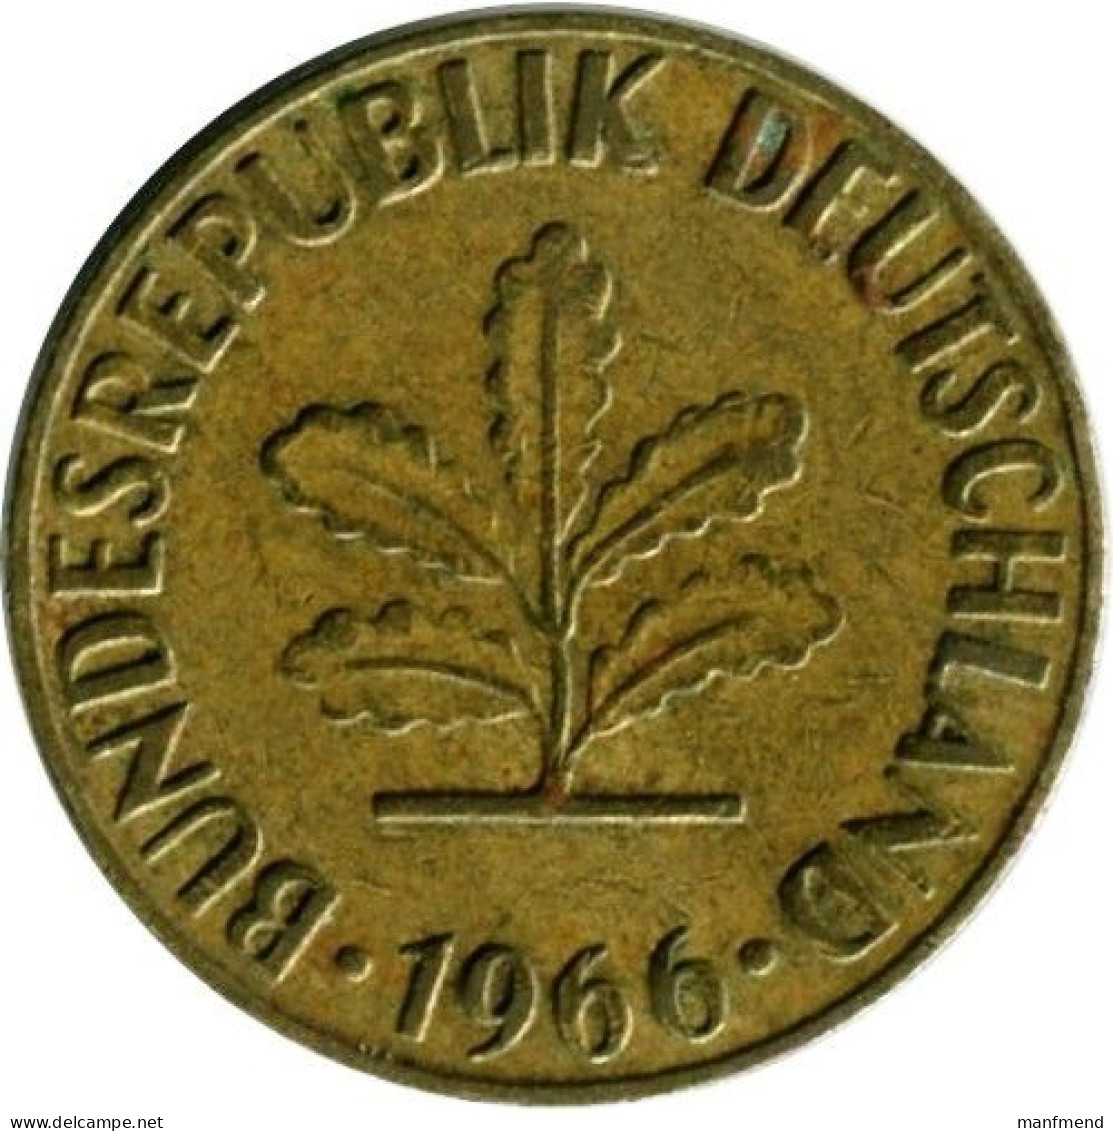 Germany - 1966 - KM 107 - 5 Pfennig - Mintmark "J" - Hamburg - VF+ - 5 Pfennig